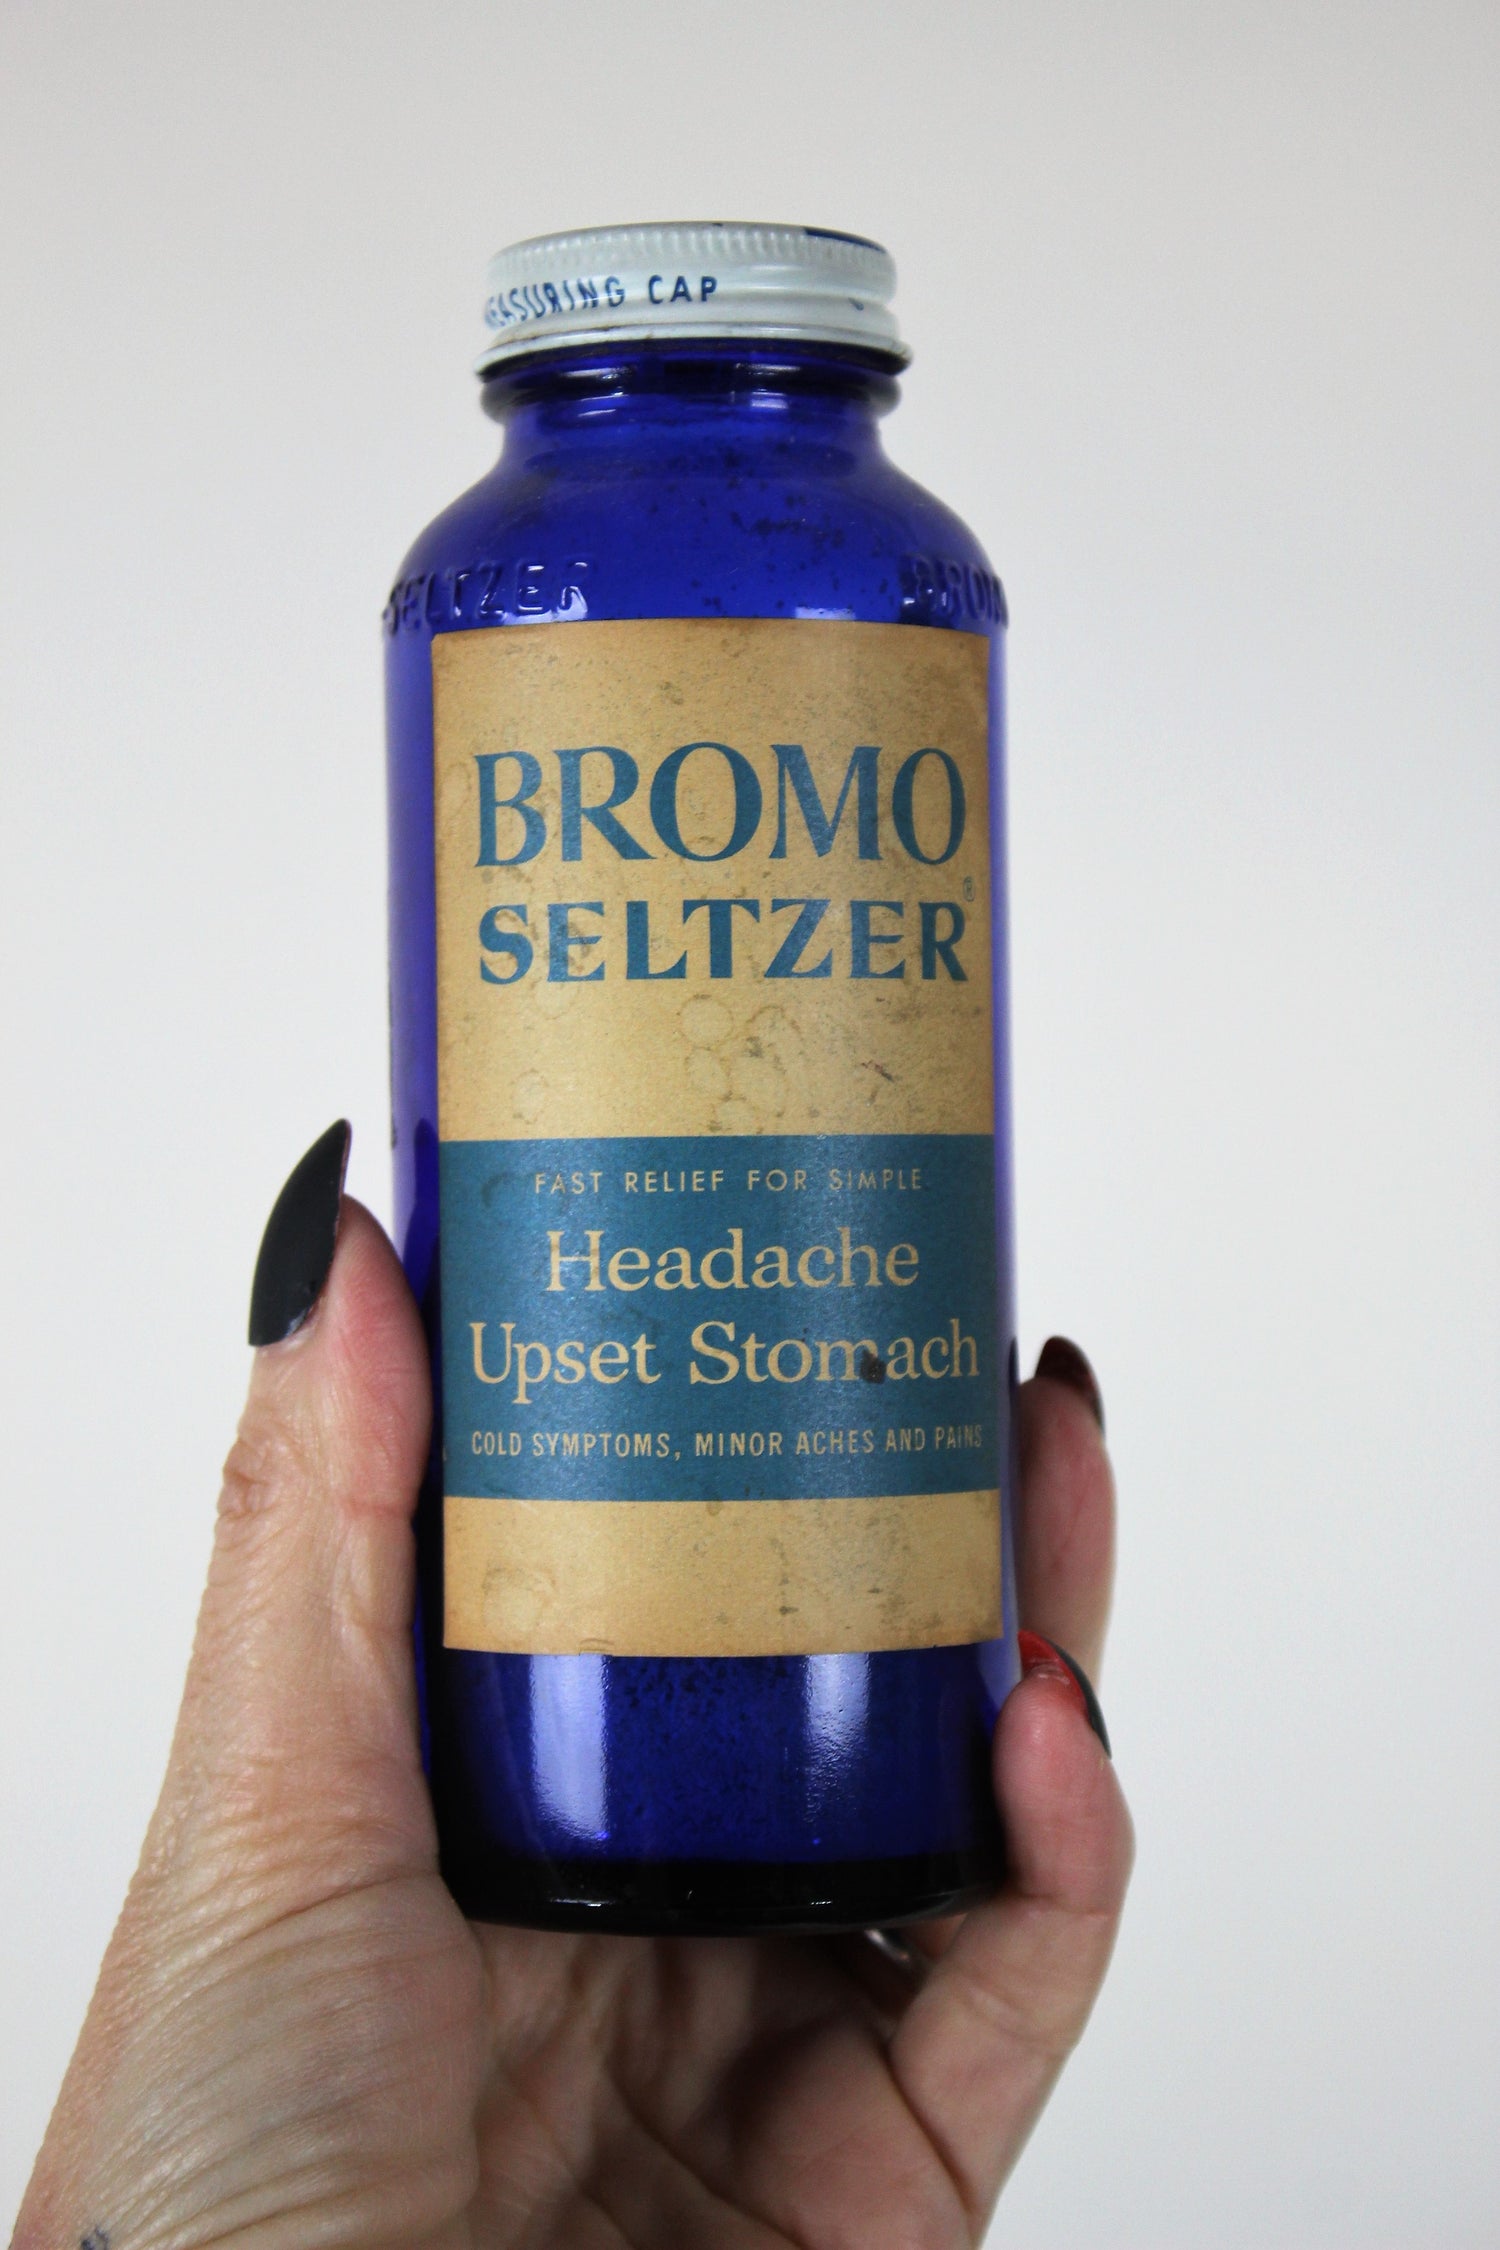 Vintage Cobalt Blue Glass Bottle of Bromo Seltzer With Label And Lid